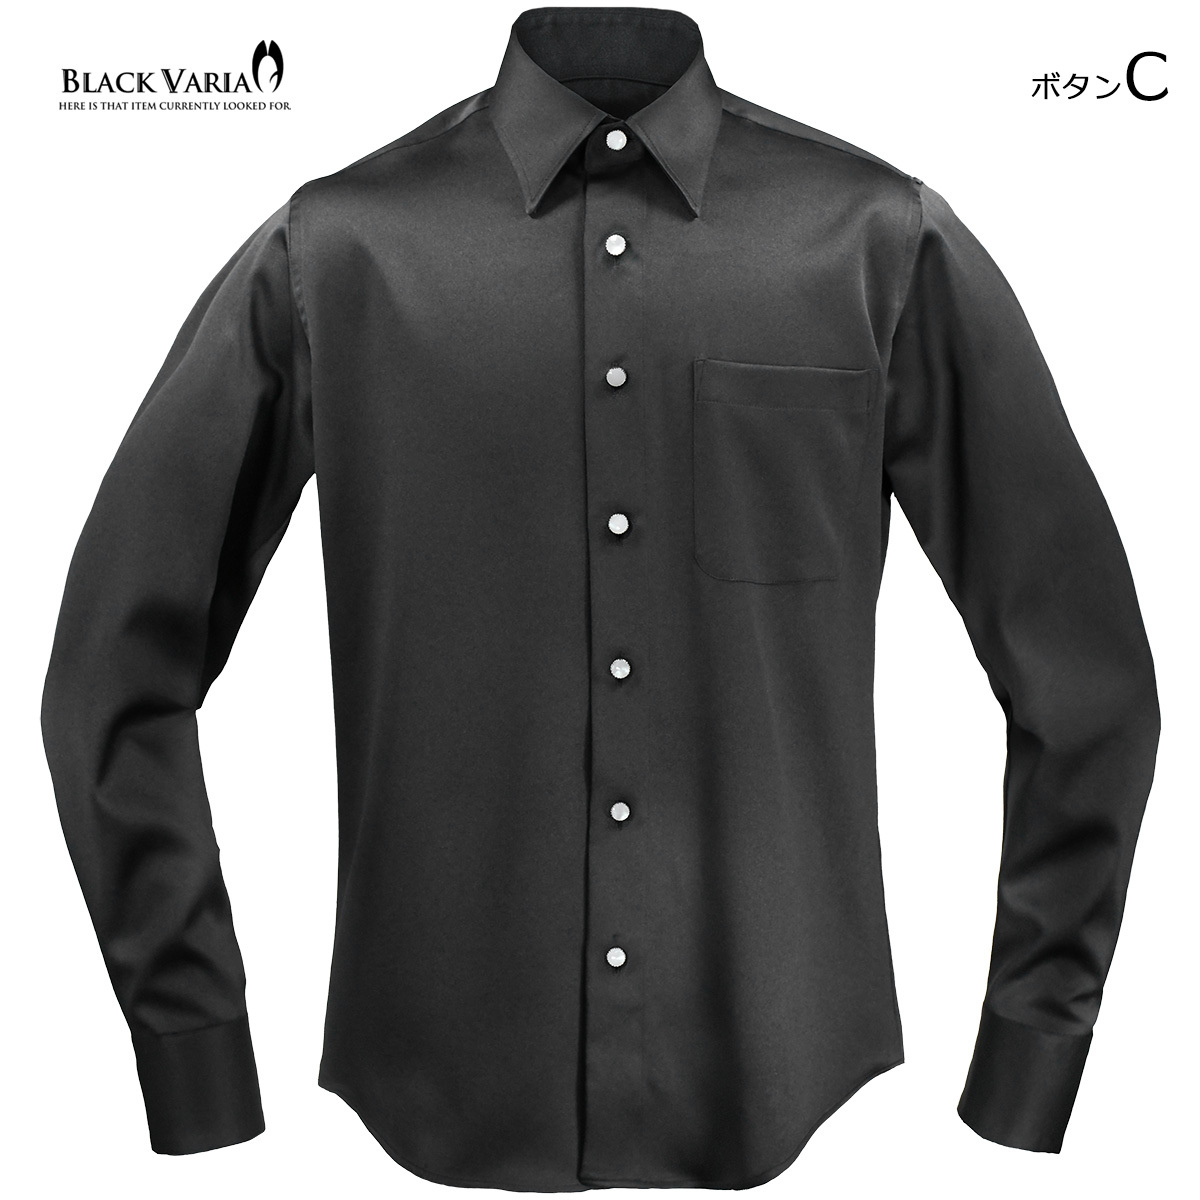 新発売の BlackVaria サテンシャツ ラインストーンボタン ドレスシャツ パウダーサテン レギュラーカラー パーティー mens 21170  - www.el-services.fr